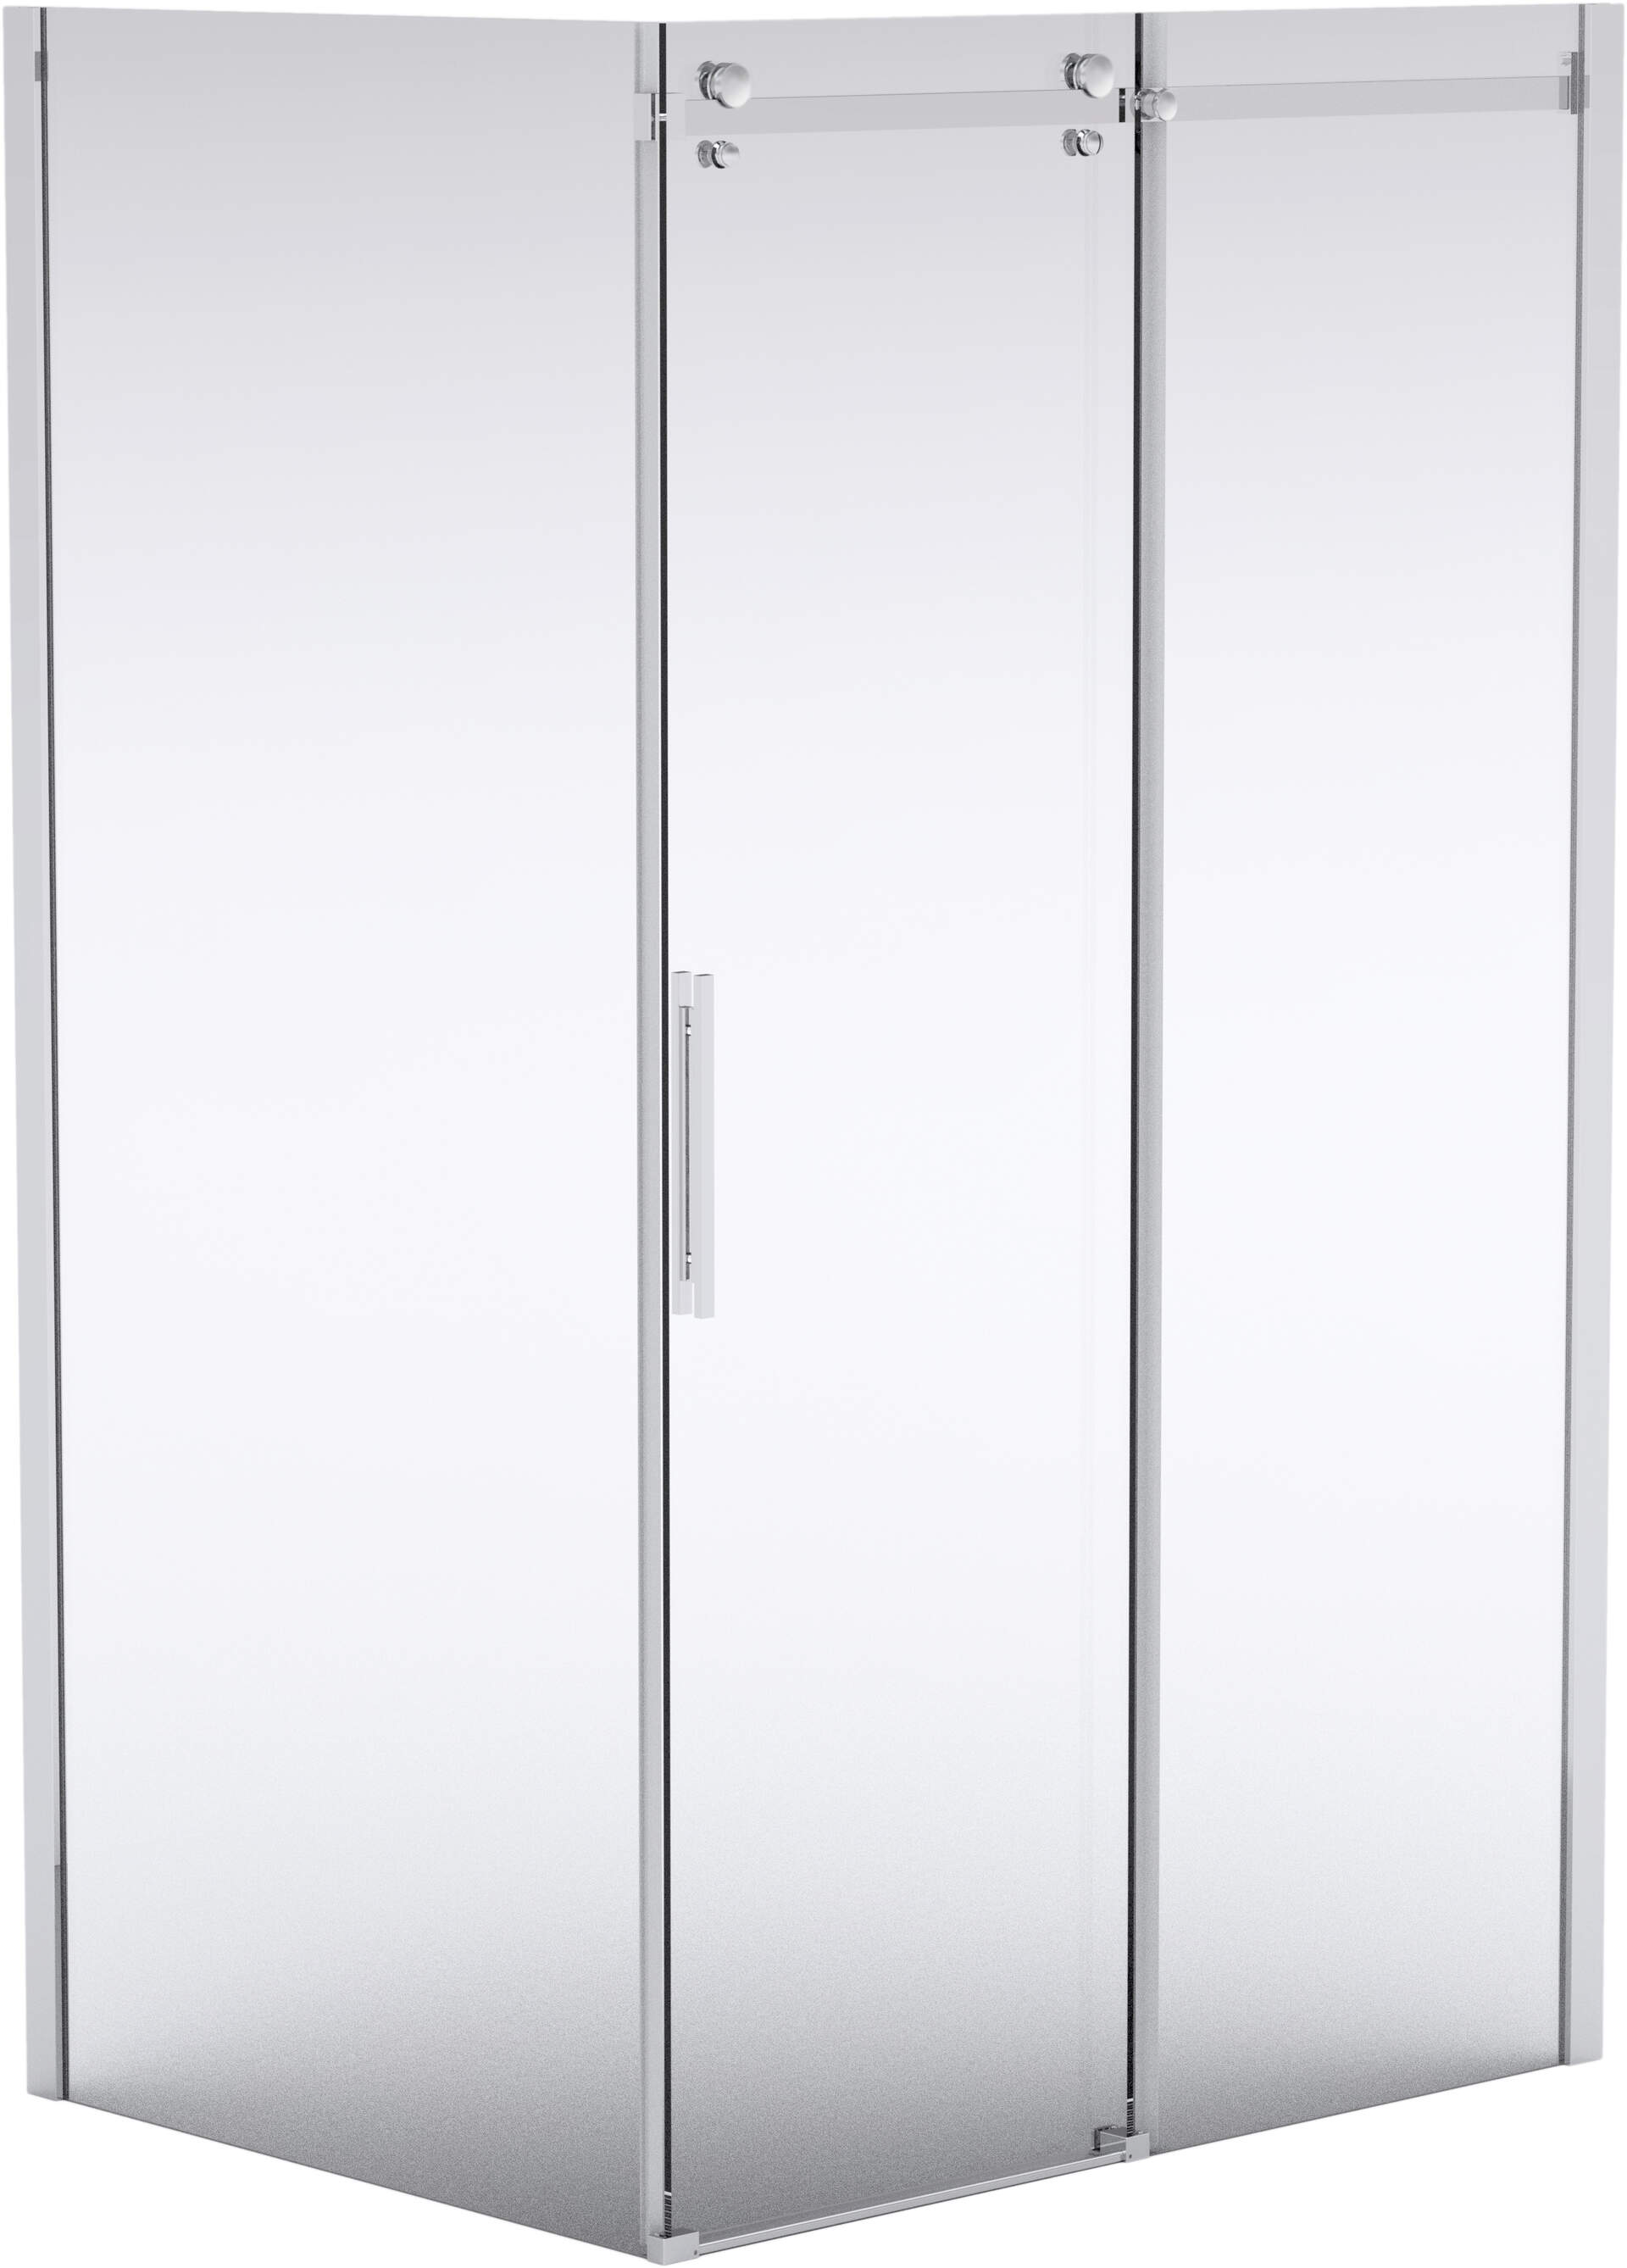 Hiacynt Sprchové dvere, zapustené, 140 cm - posuvné